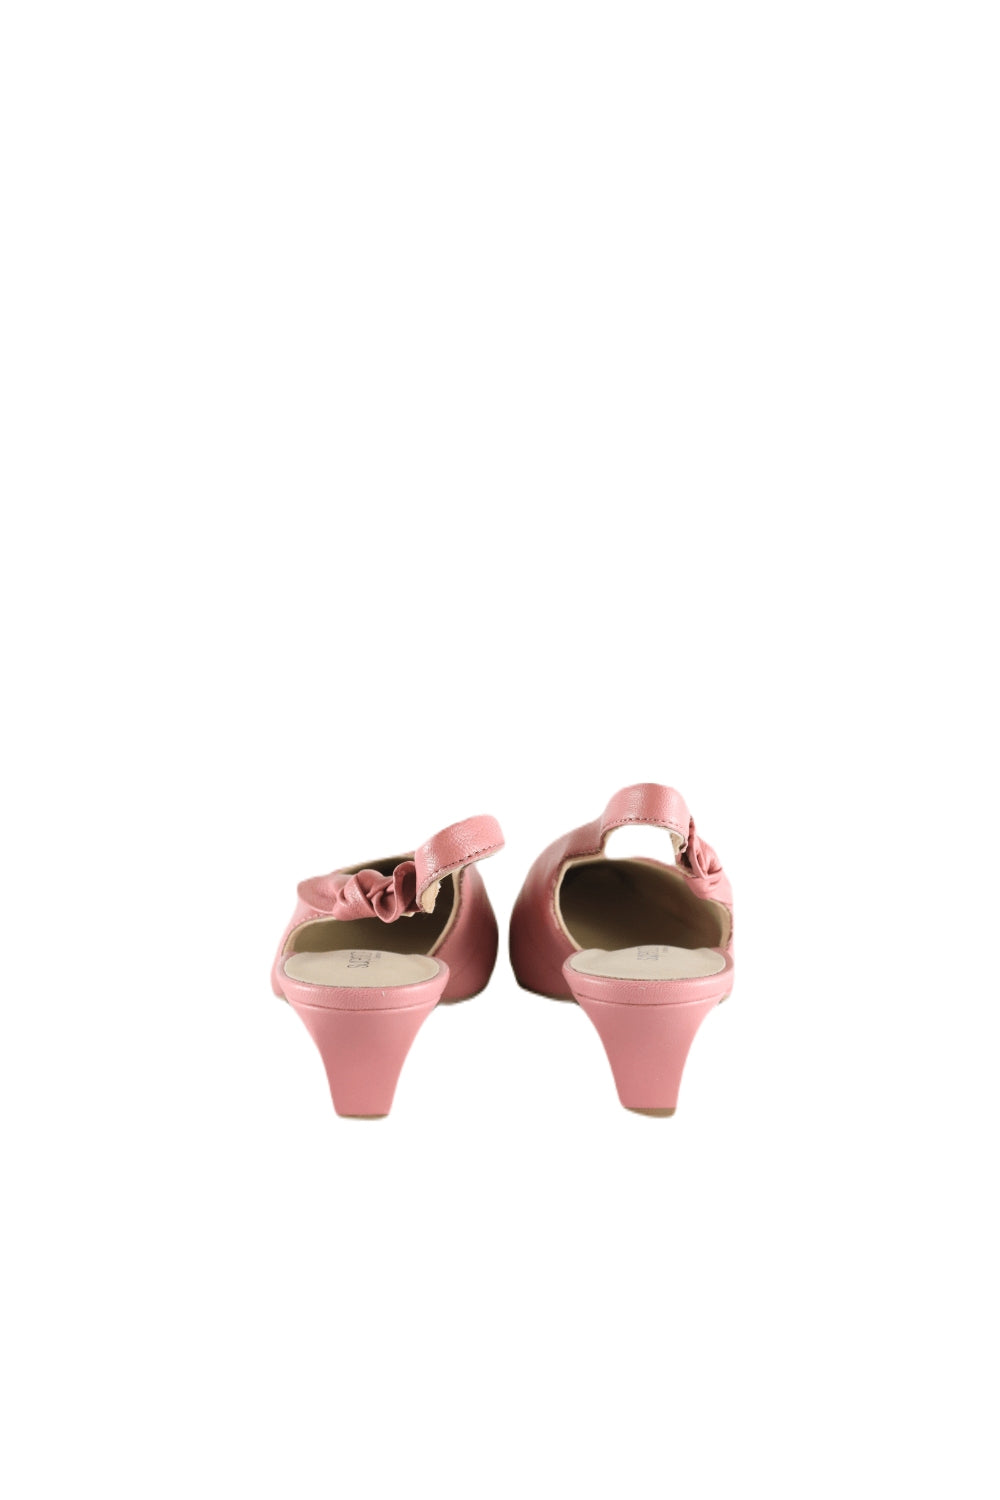 Supersoft By Diana Ferrari Pink Kitten Heel 8.5